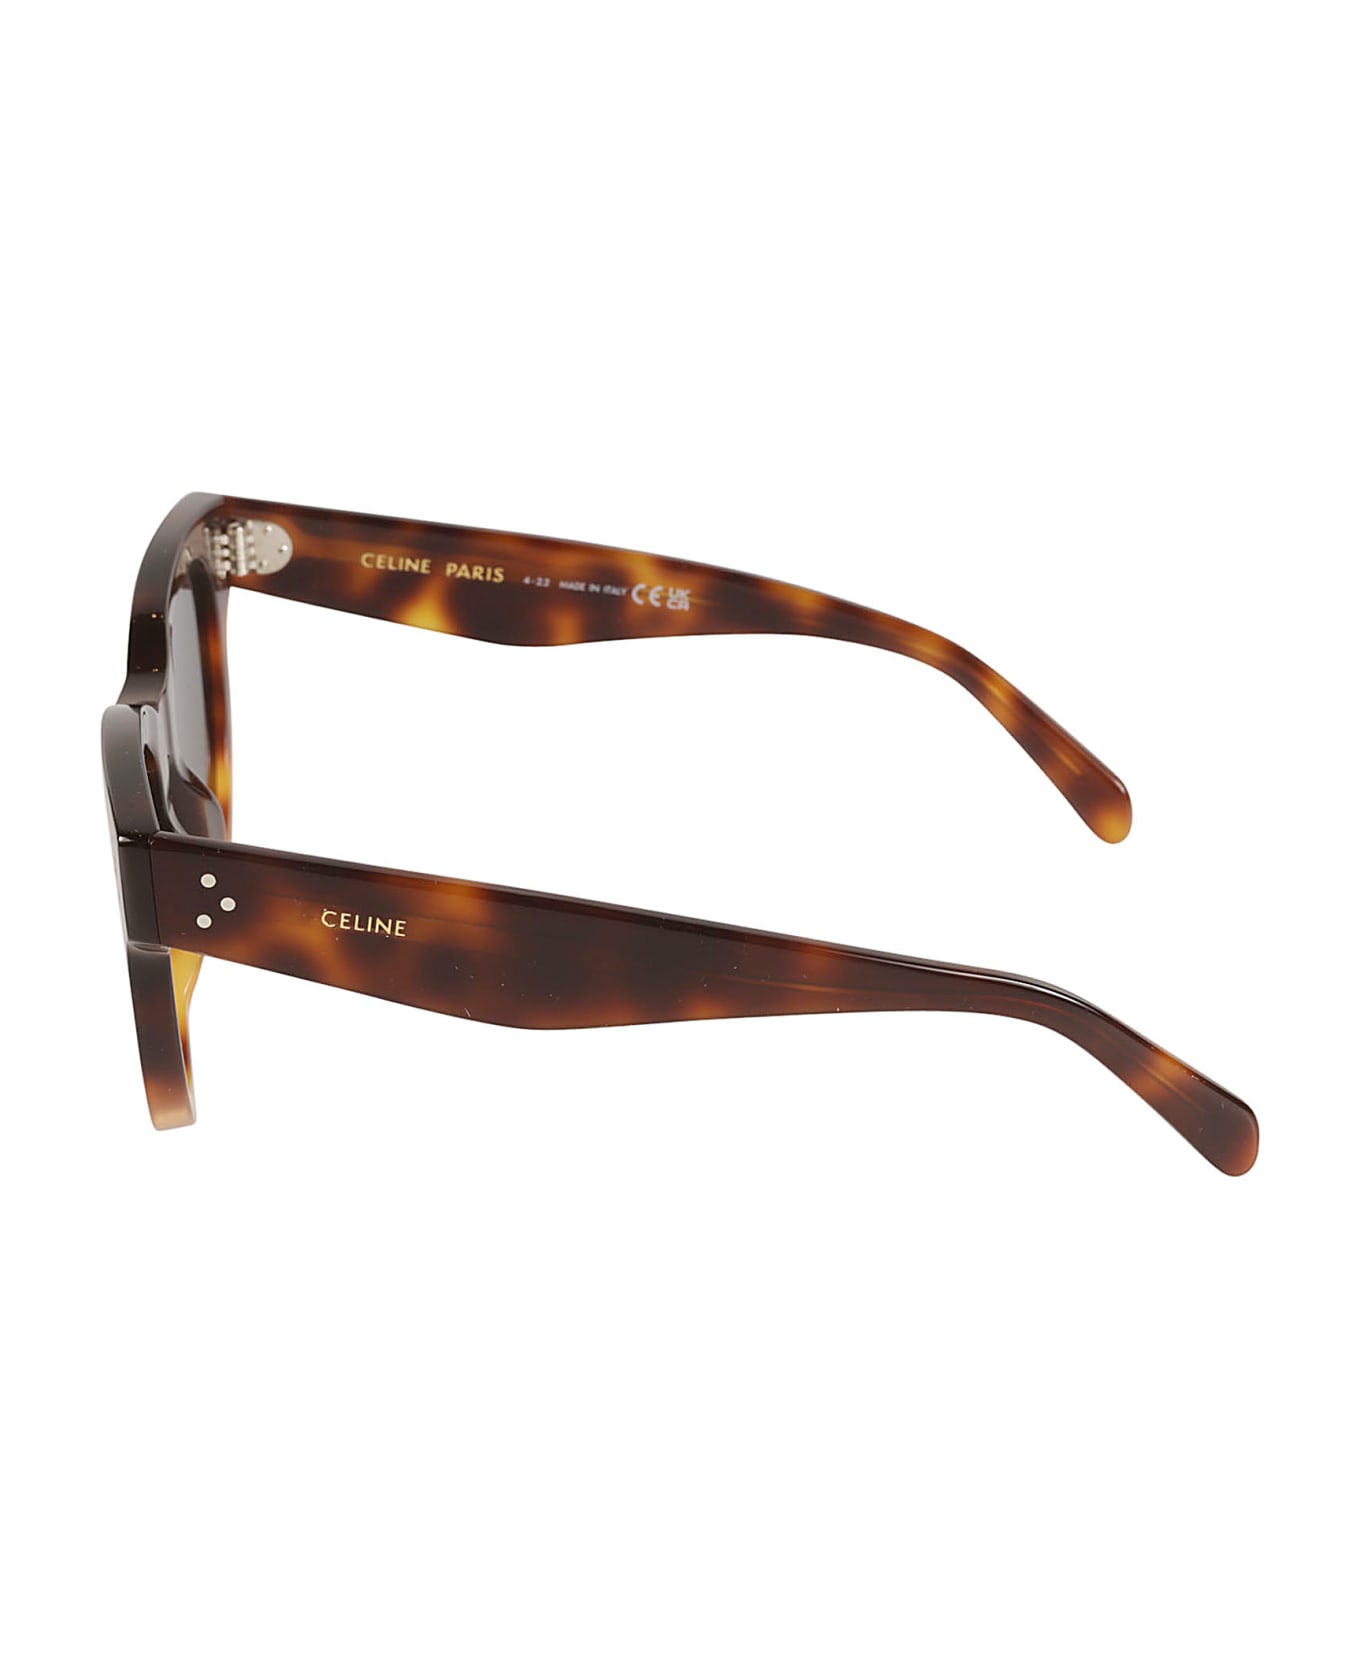 Celine Geometric Sunglasses - Black サングラス